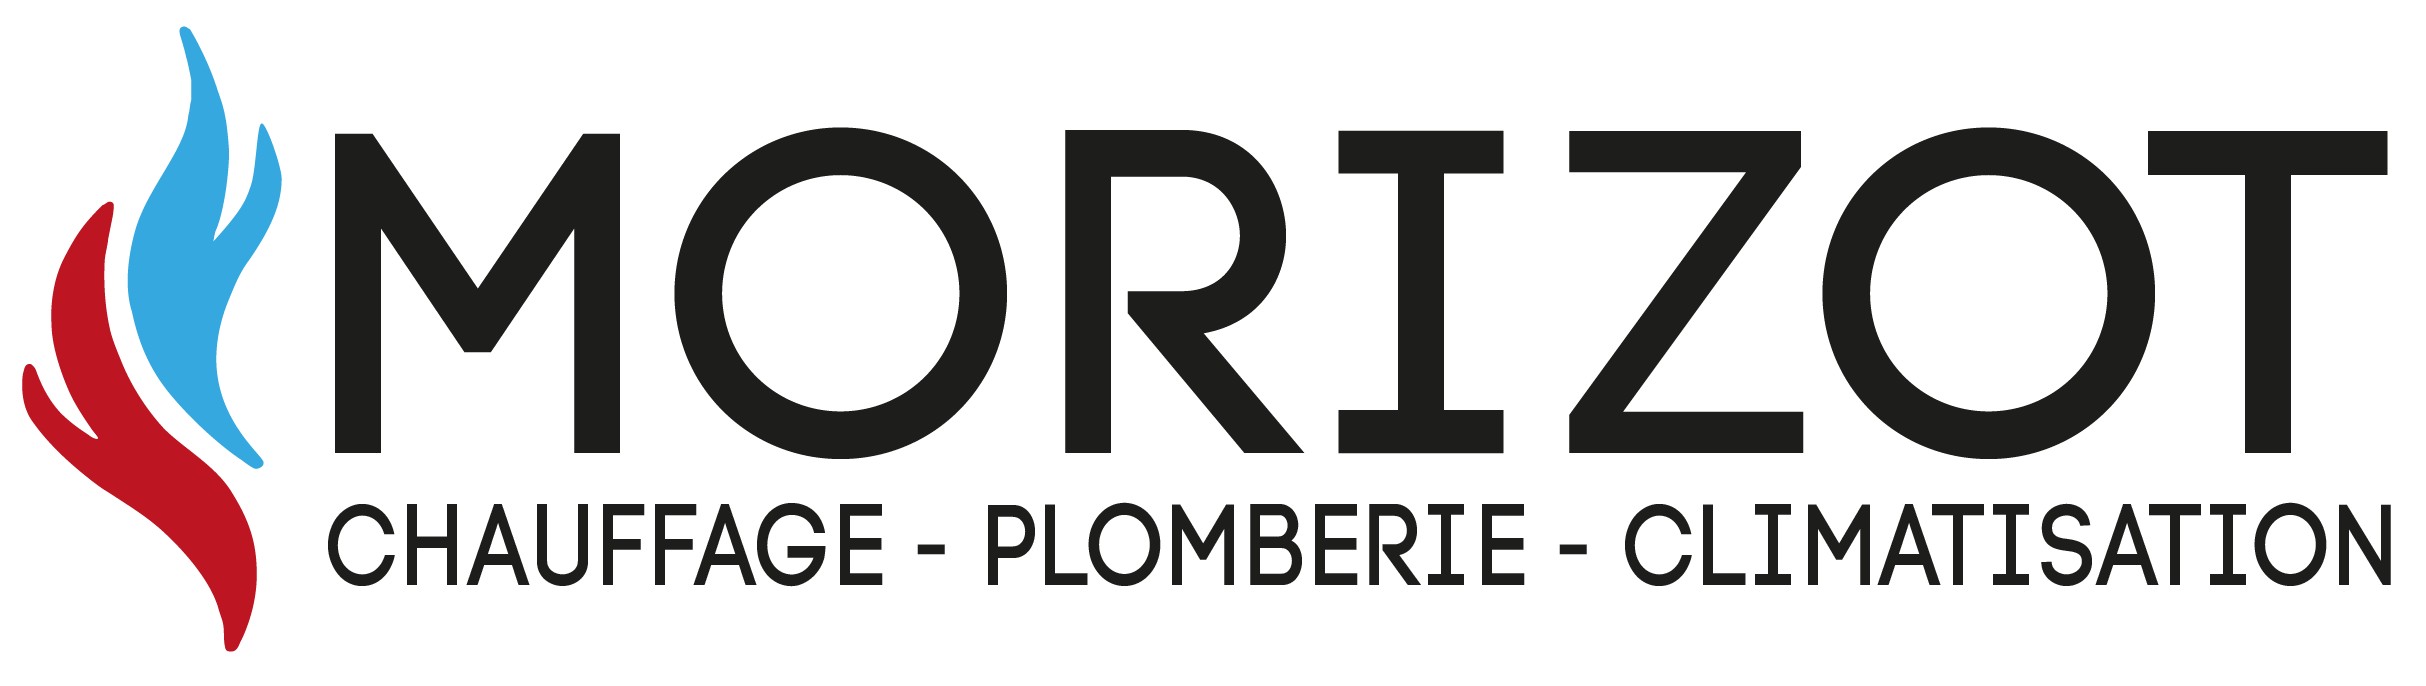 Sarl Morizot, Chauffagiste à Carpentras. Installation, dépannage, chauffage, Carpentras et Vaucluse